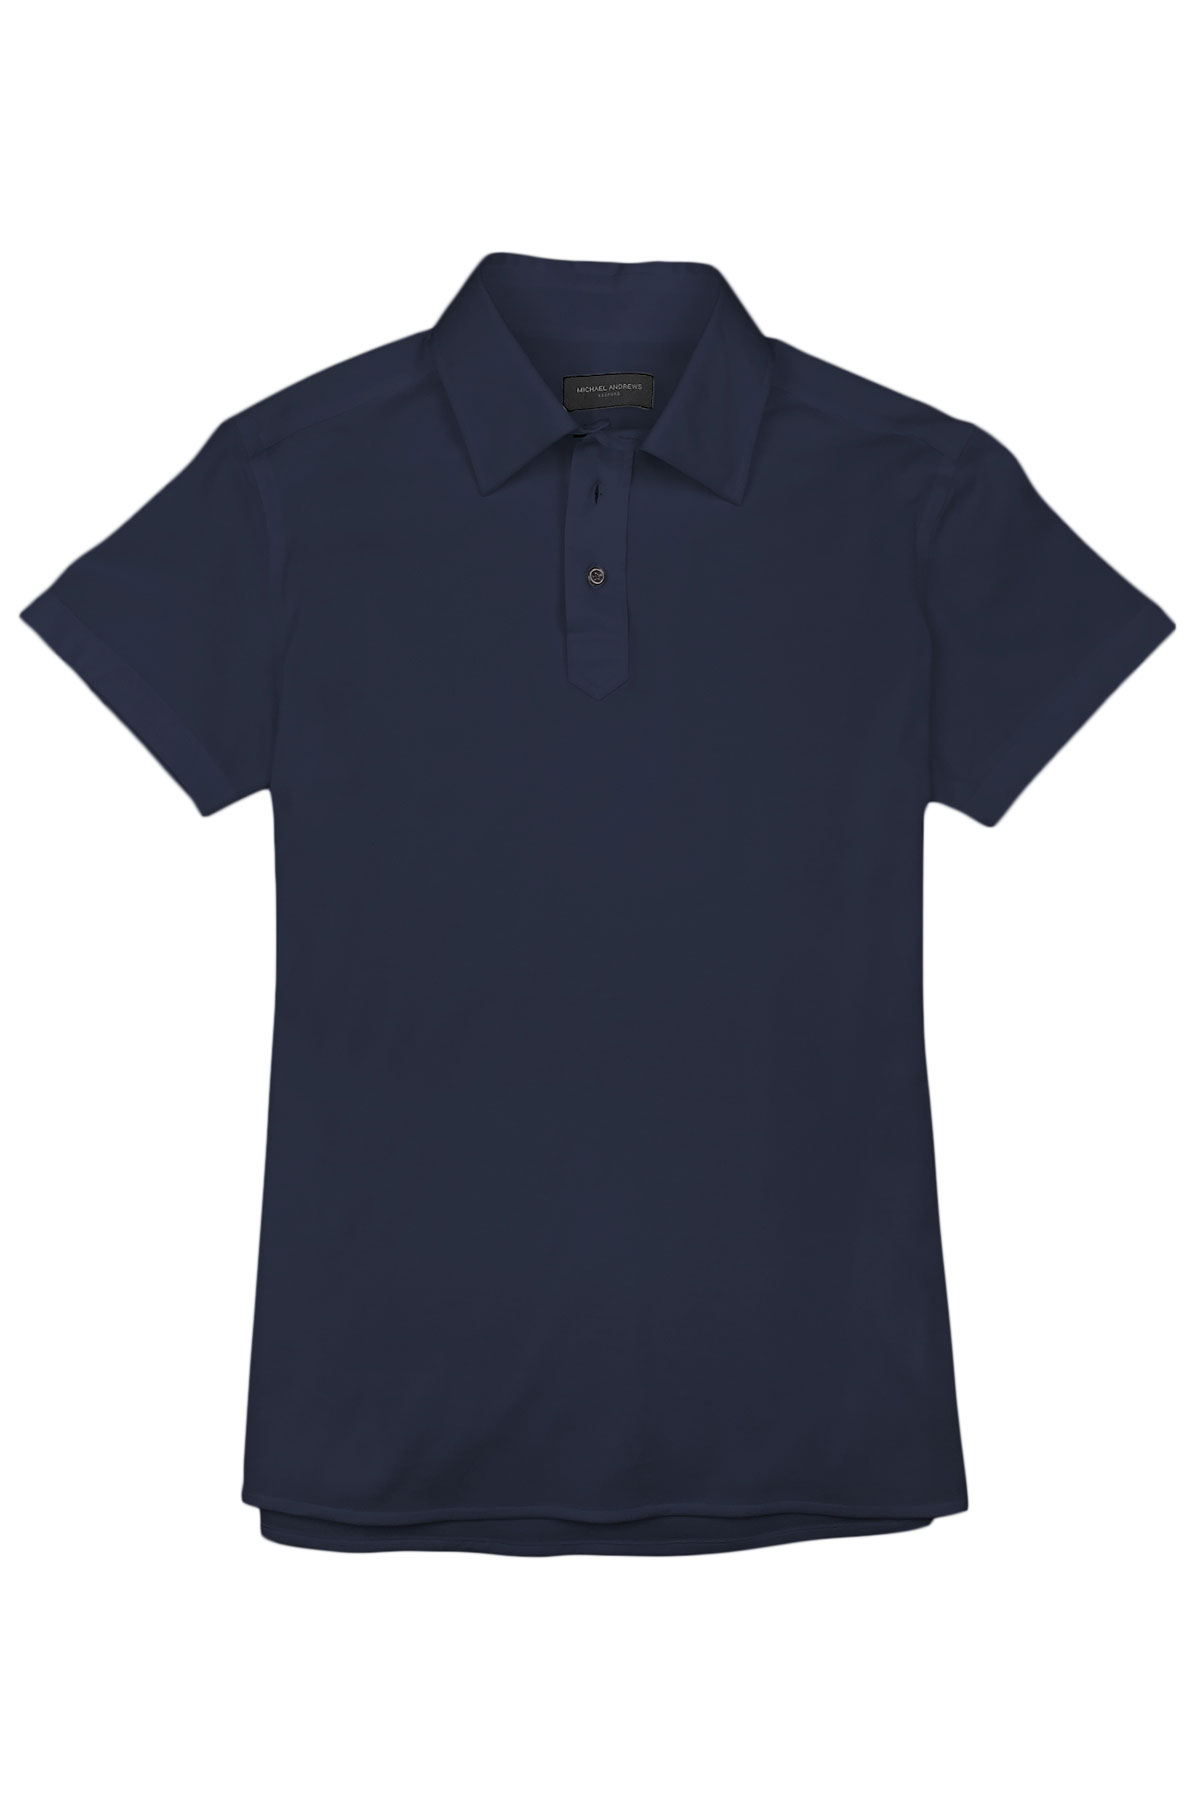 Navy Blue Pique Polo Shirt